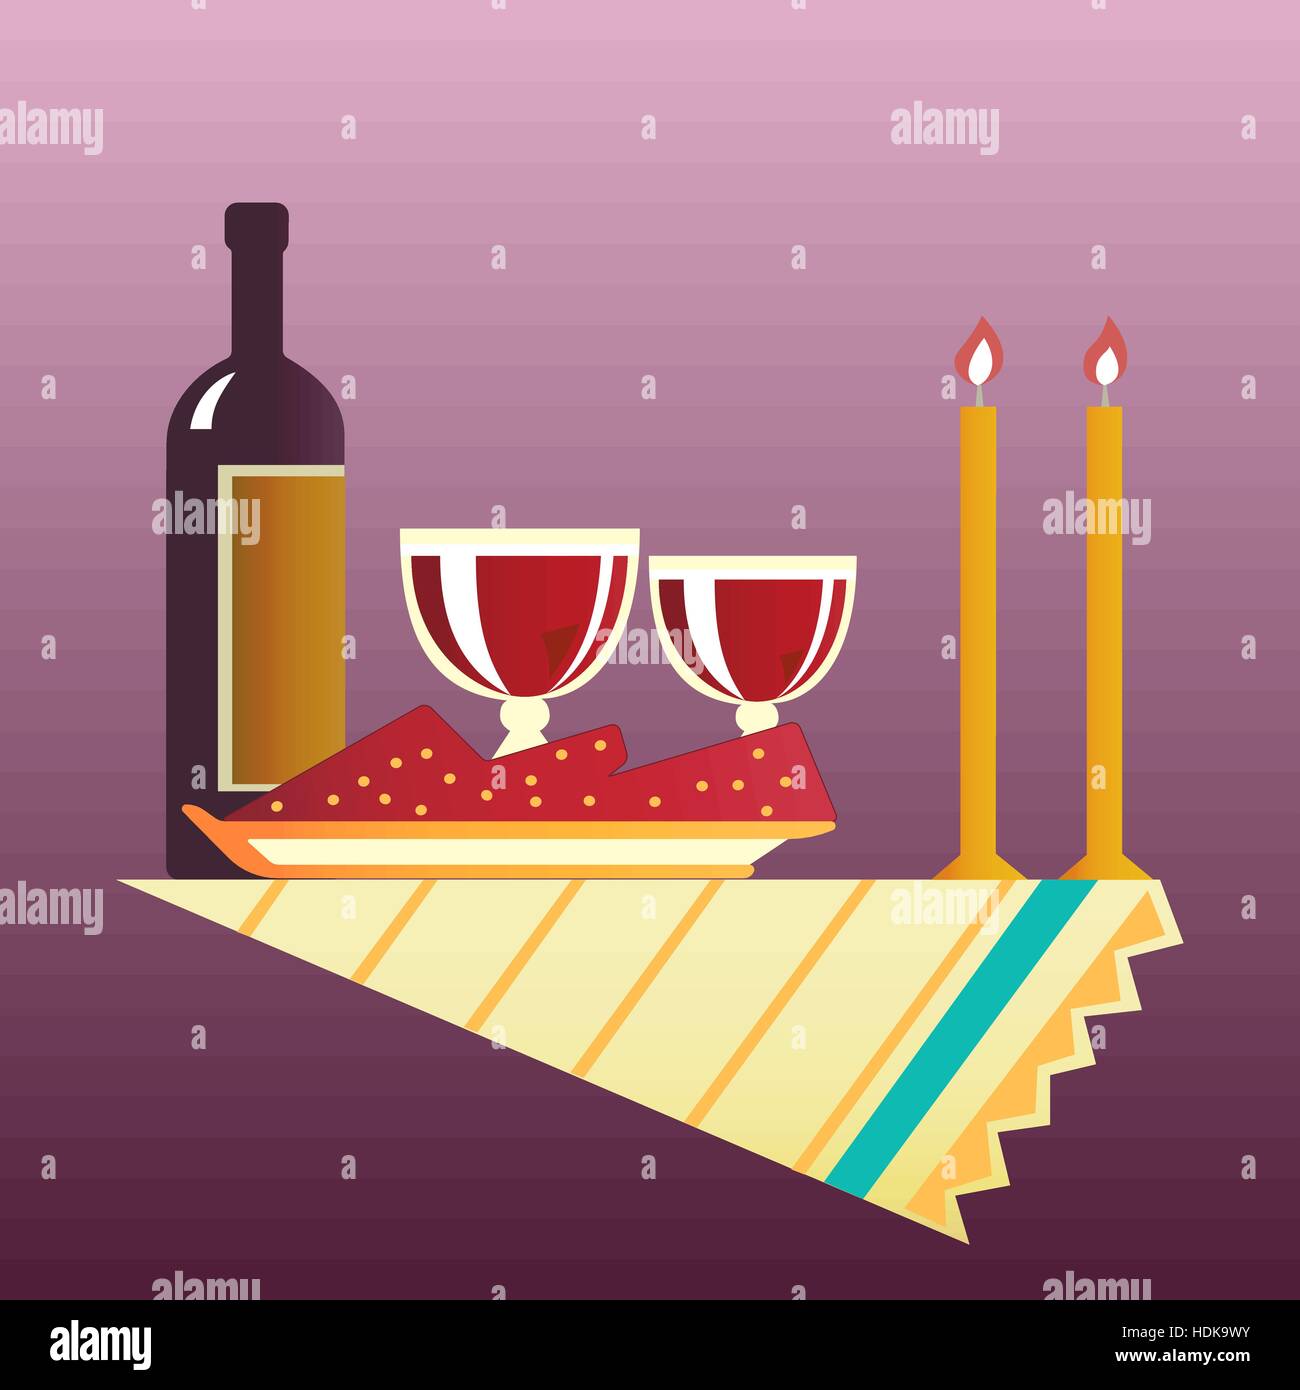 Flachen Stil Tisch für zwei Personen mit Tuch, Gläser, Flasche Wein und zwei brennende Kerzen. Vektor-Illustration. Stock Vektor